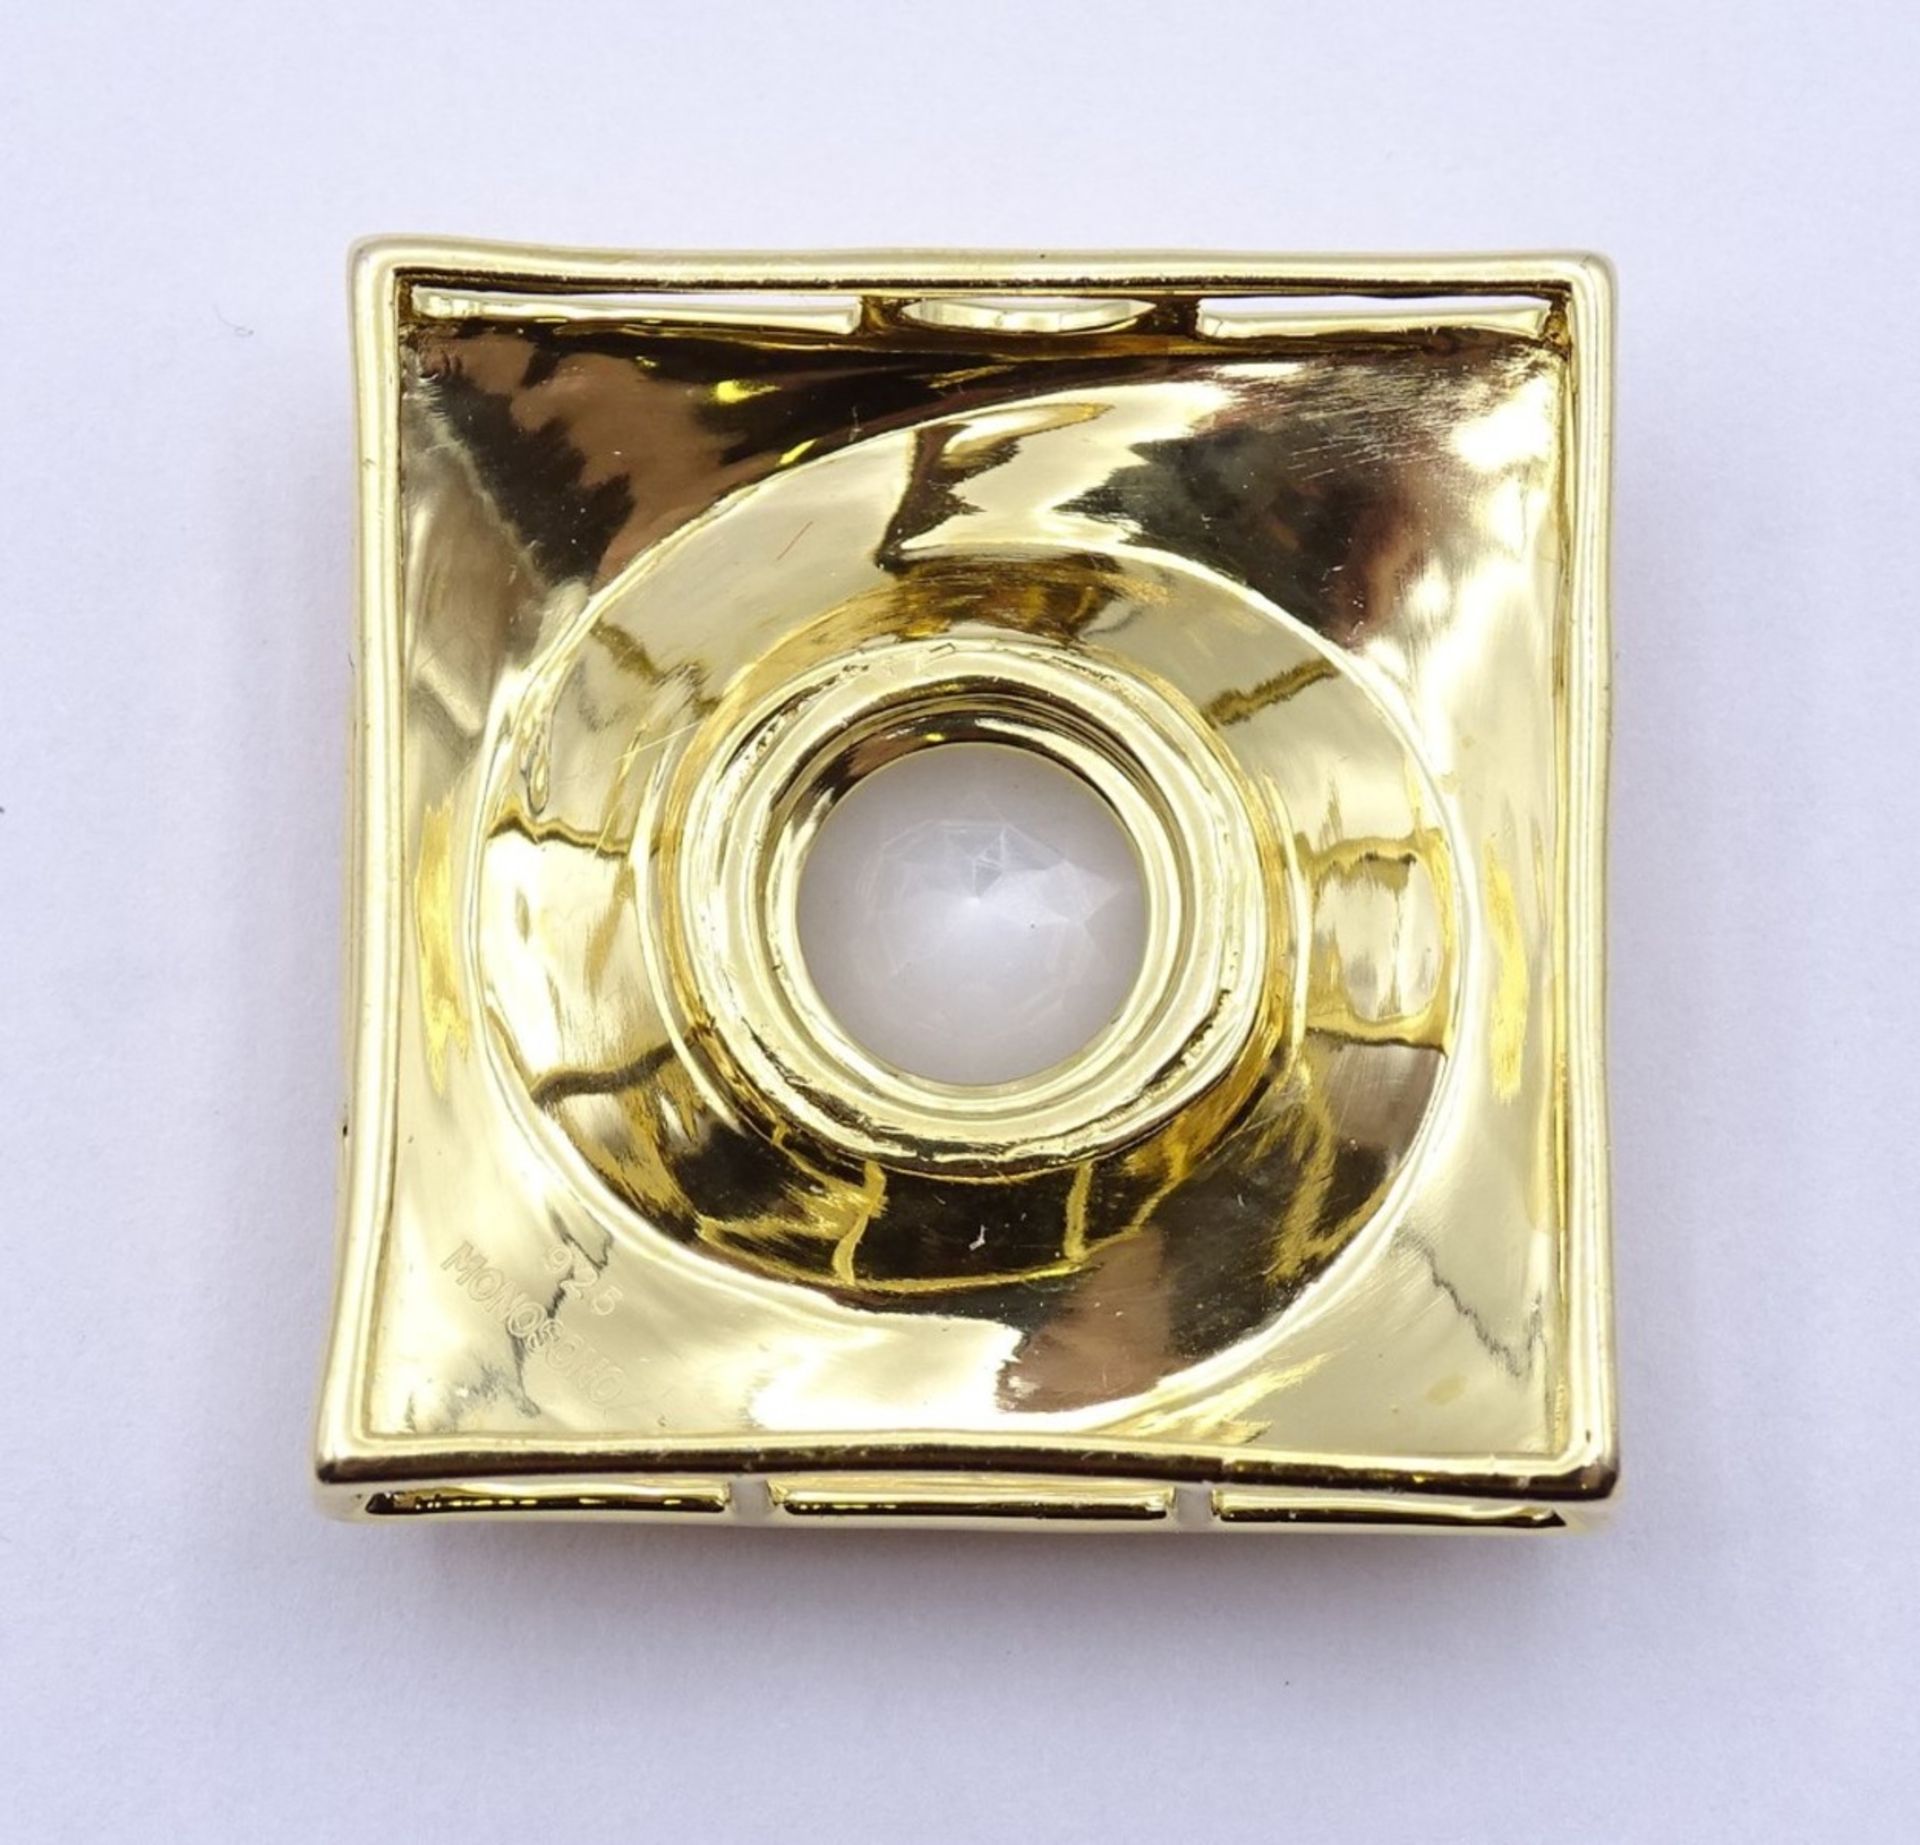 Ketten Anhänger Sterling Silber 0.925 vergoldet mit einen rund facc. Quartz, 2,9x 2,9cm, 14,6 g.sig. - Image 3 of 3